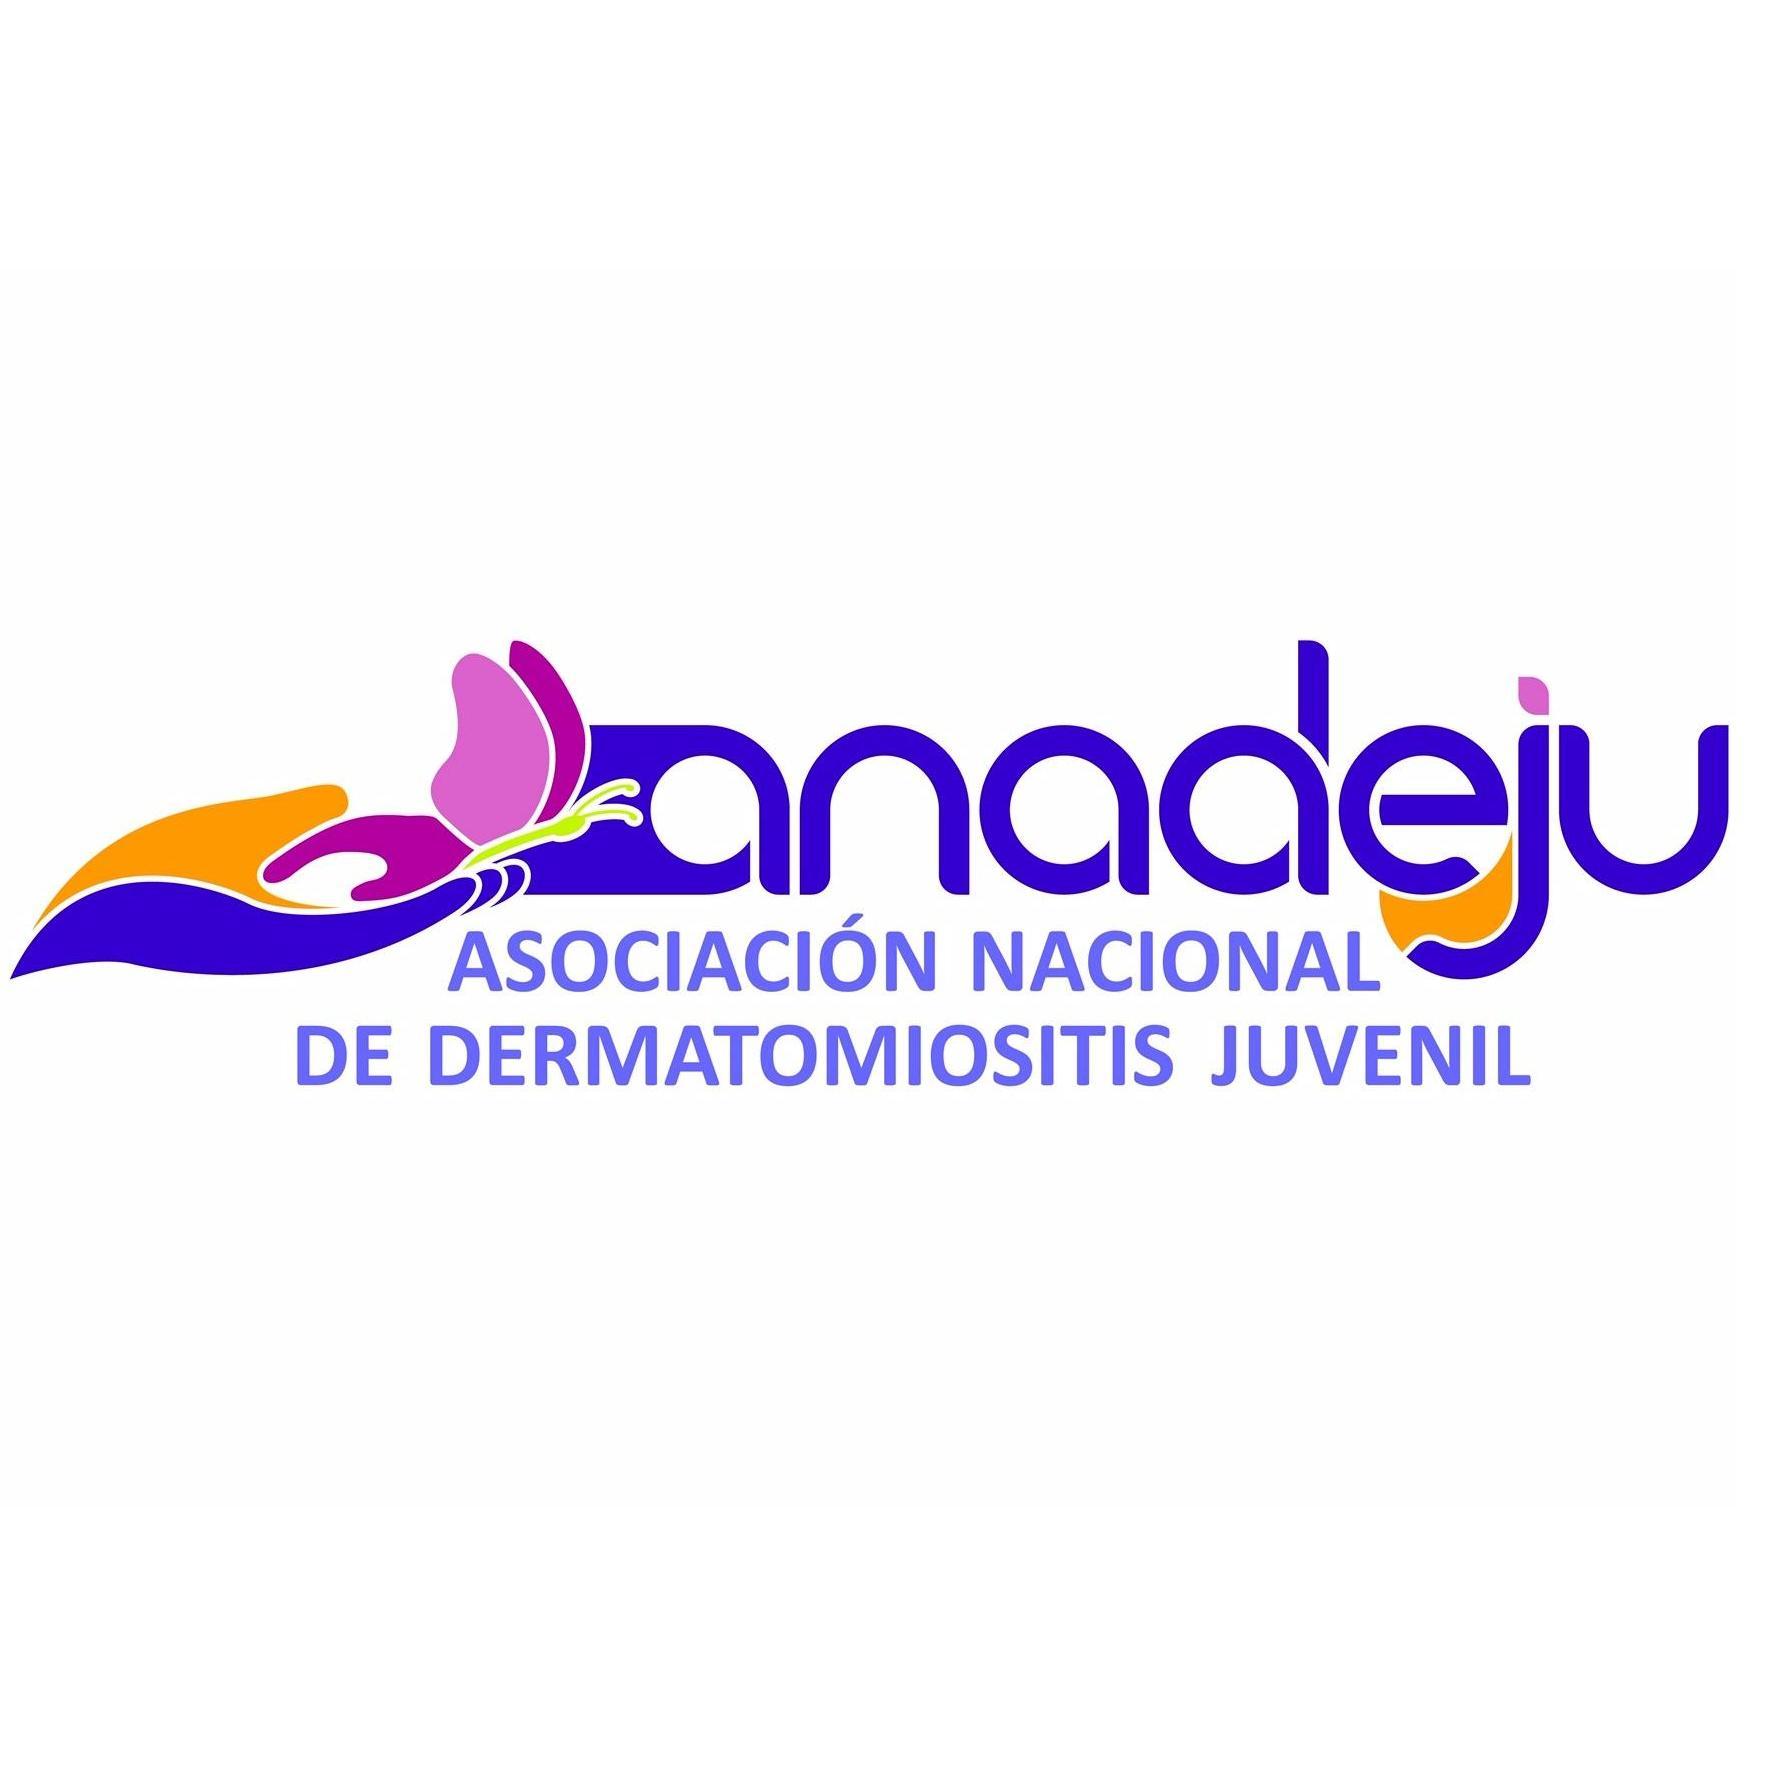 ANADEJU - Asociación Nacional de Dermatomiositis Juvenil